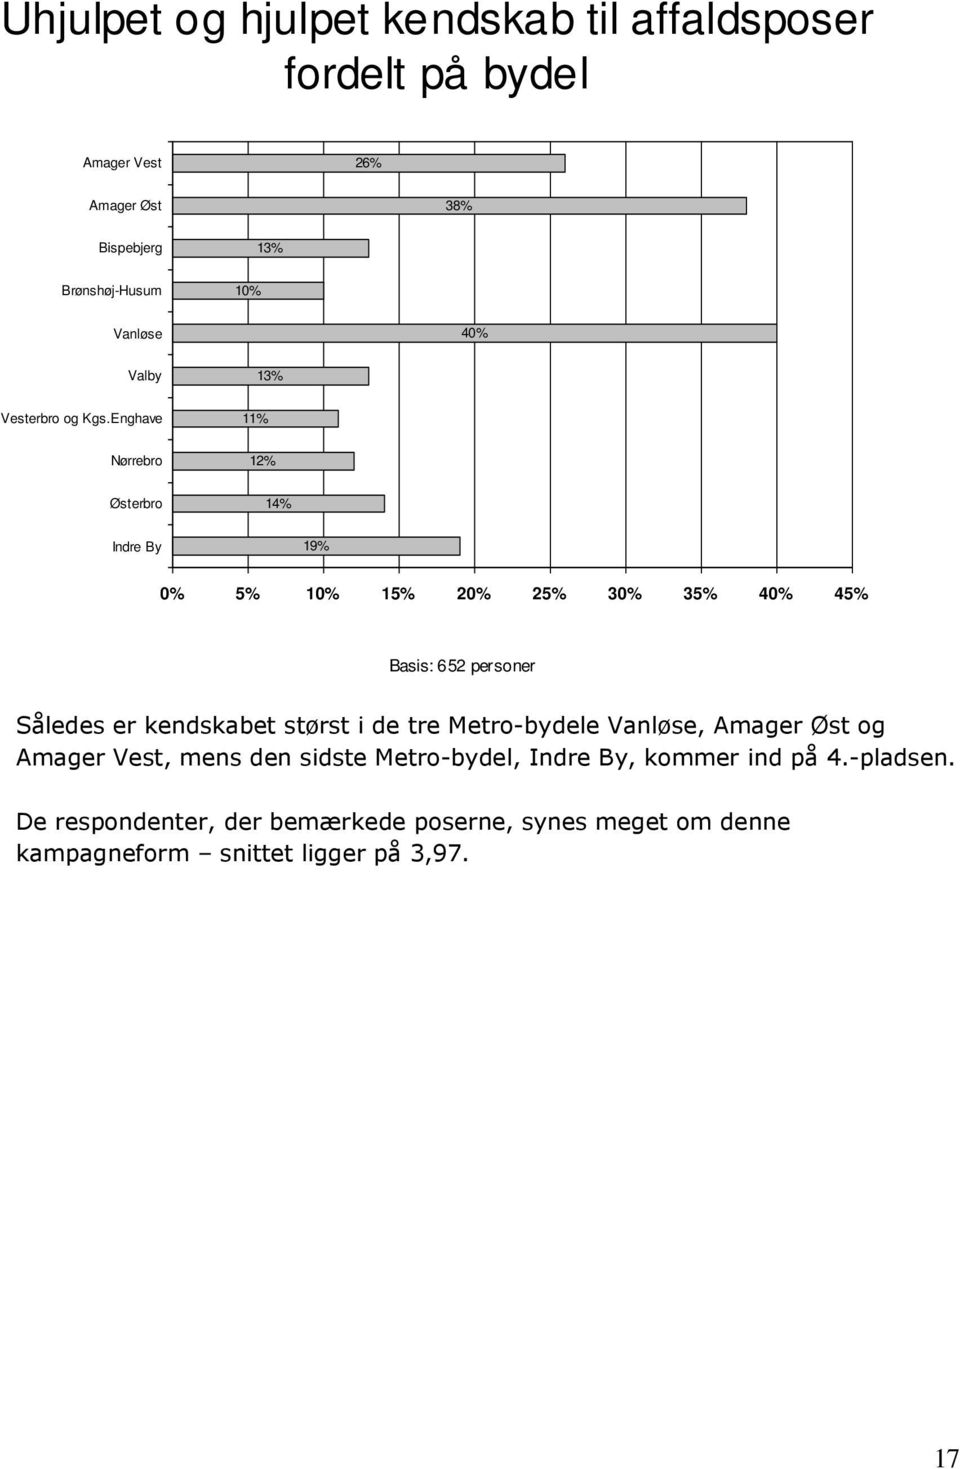 Enghave 11% Nørrebro 12% Østerbro 14% Indre By 19% 0% 5% 10% 15% 20% 25% 30% 35% 40% 45% Basis: 652 personer Således er kendskabet